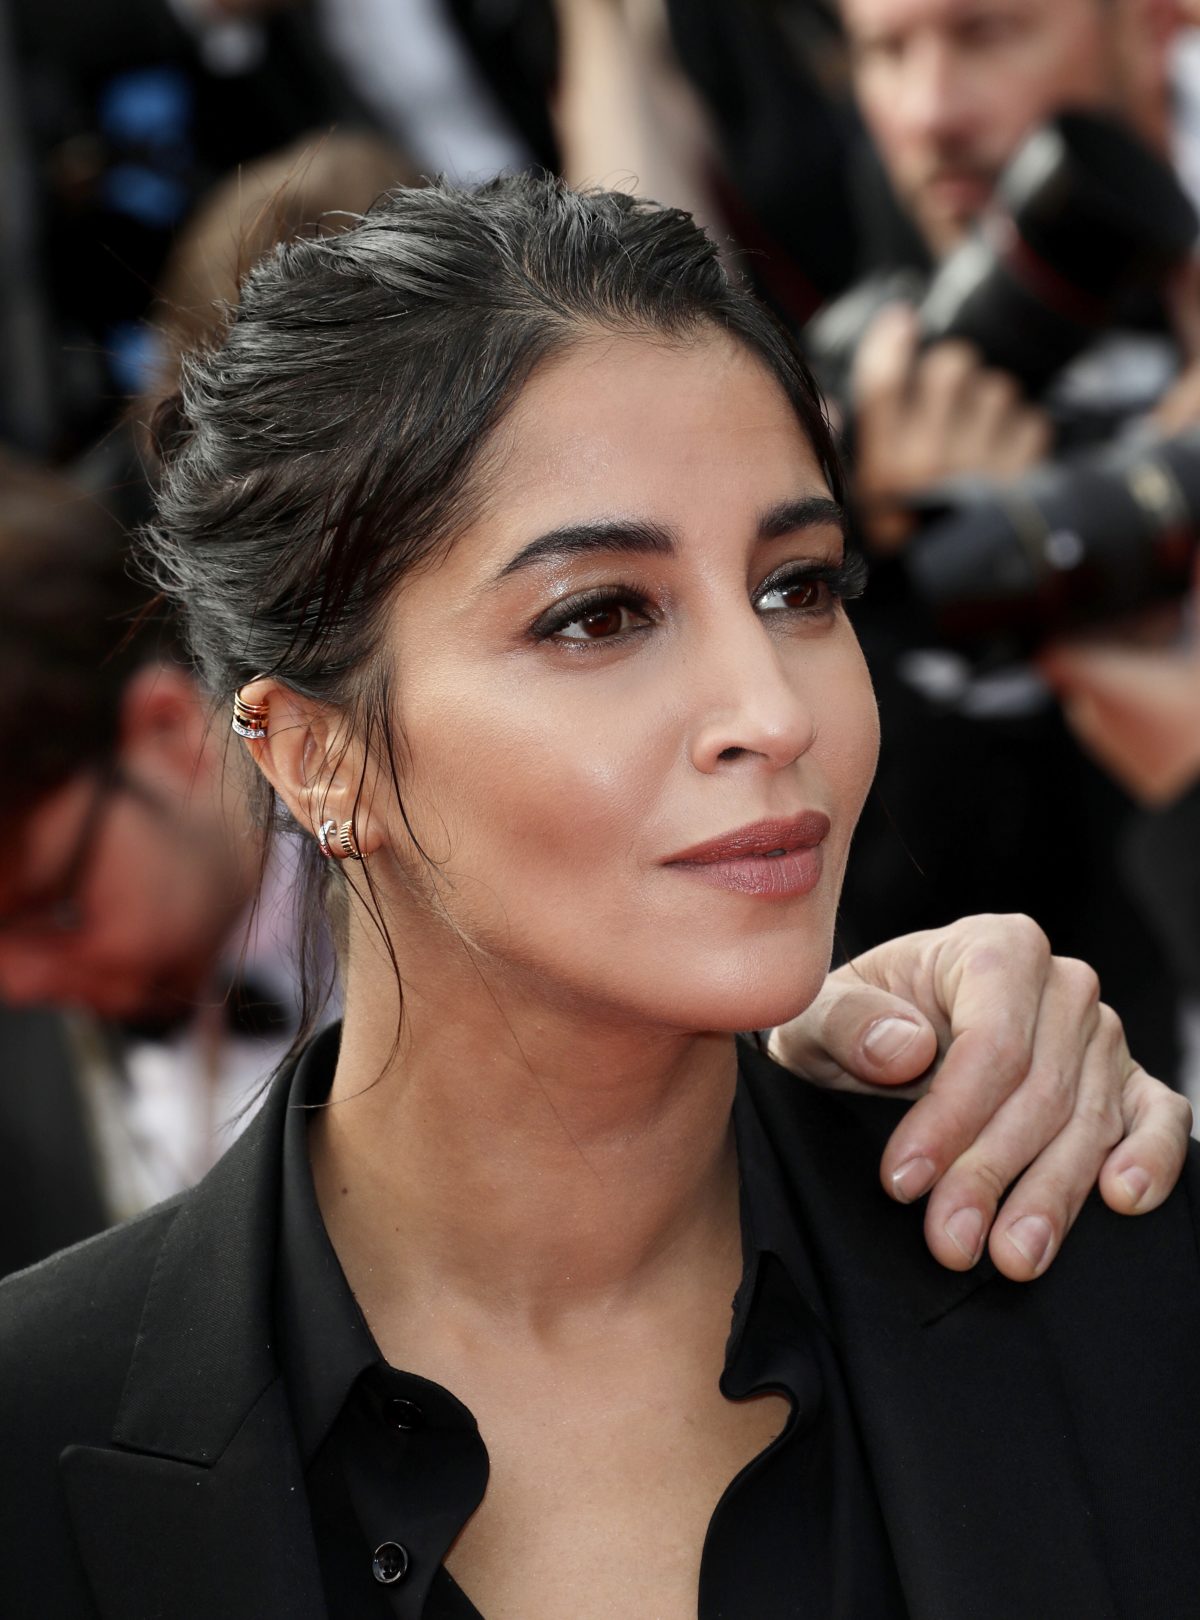 Leila Bekti festival de Cannes haut noir une main d'homme sur son épaule jeu de rôle atypique part.1-Atlaneastro